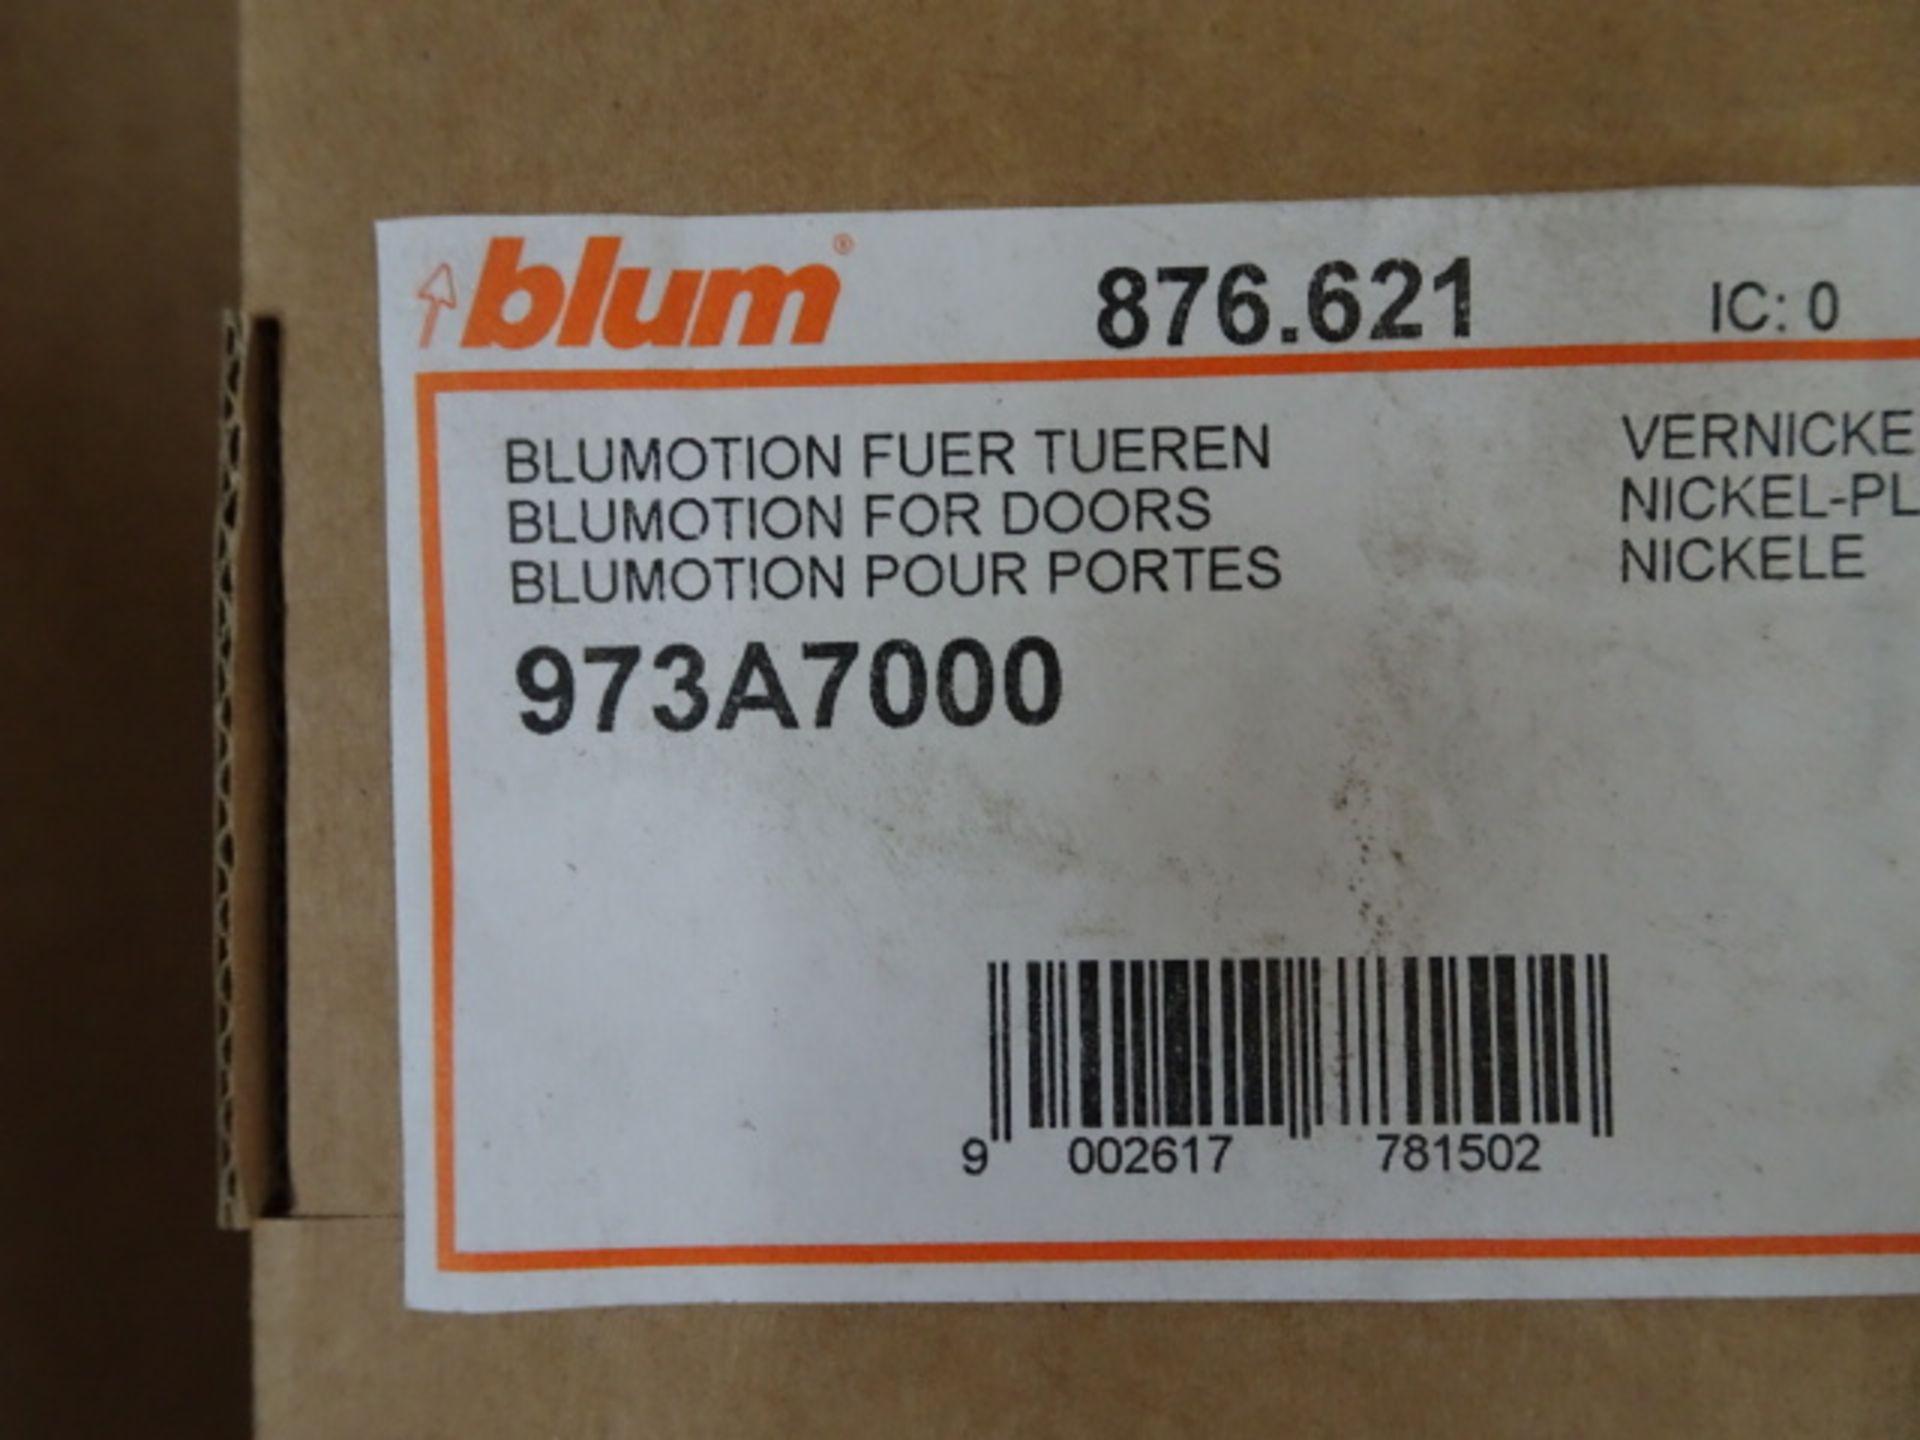 Lot de (±855) items neufs "Blum" Blumotion - Image 4 of 4